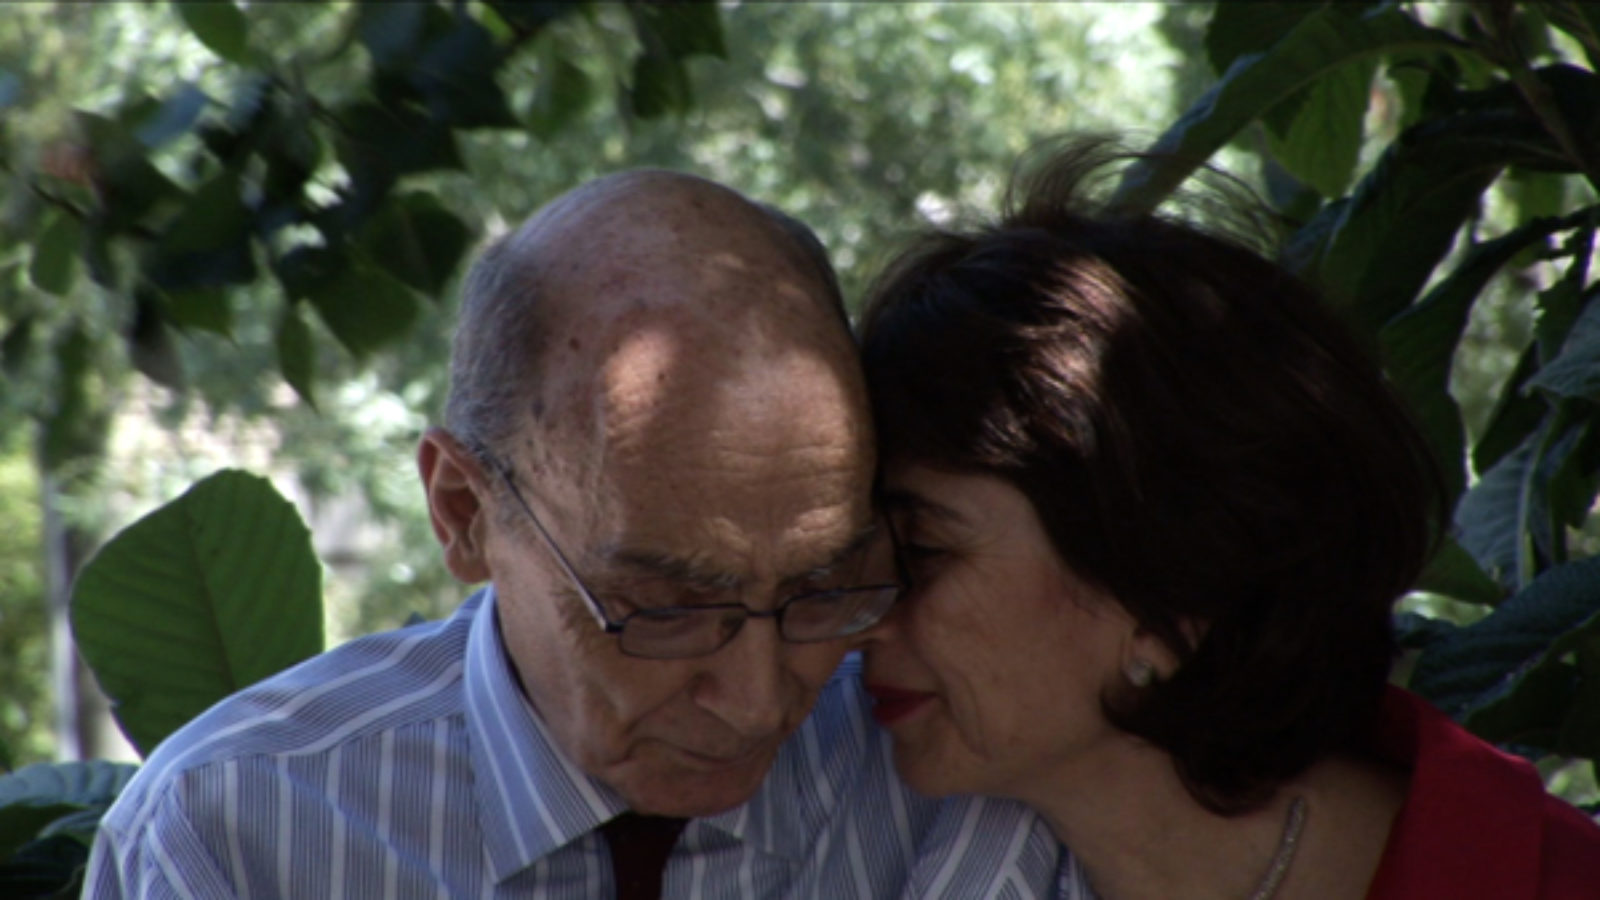 Documentário “José e Pilar” volta aos cinemas para comemorar os 100 anos de José Saramago